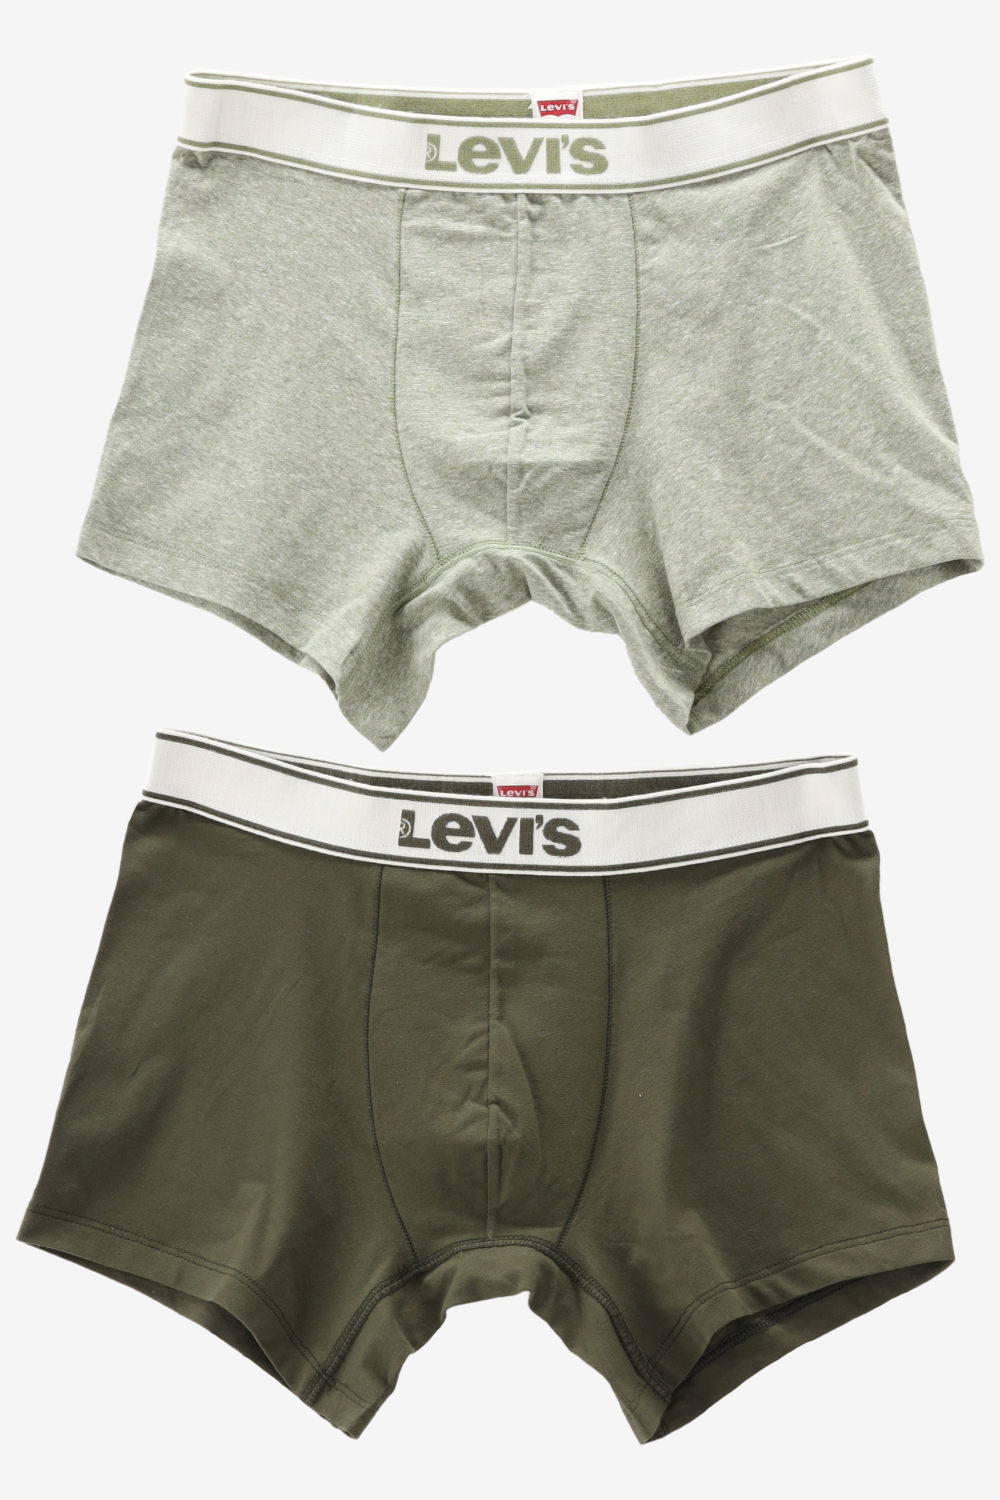 Levi's Underwear VINTAGE